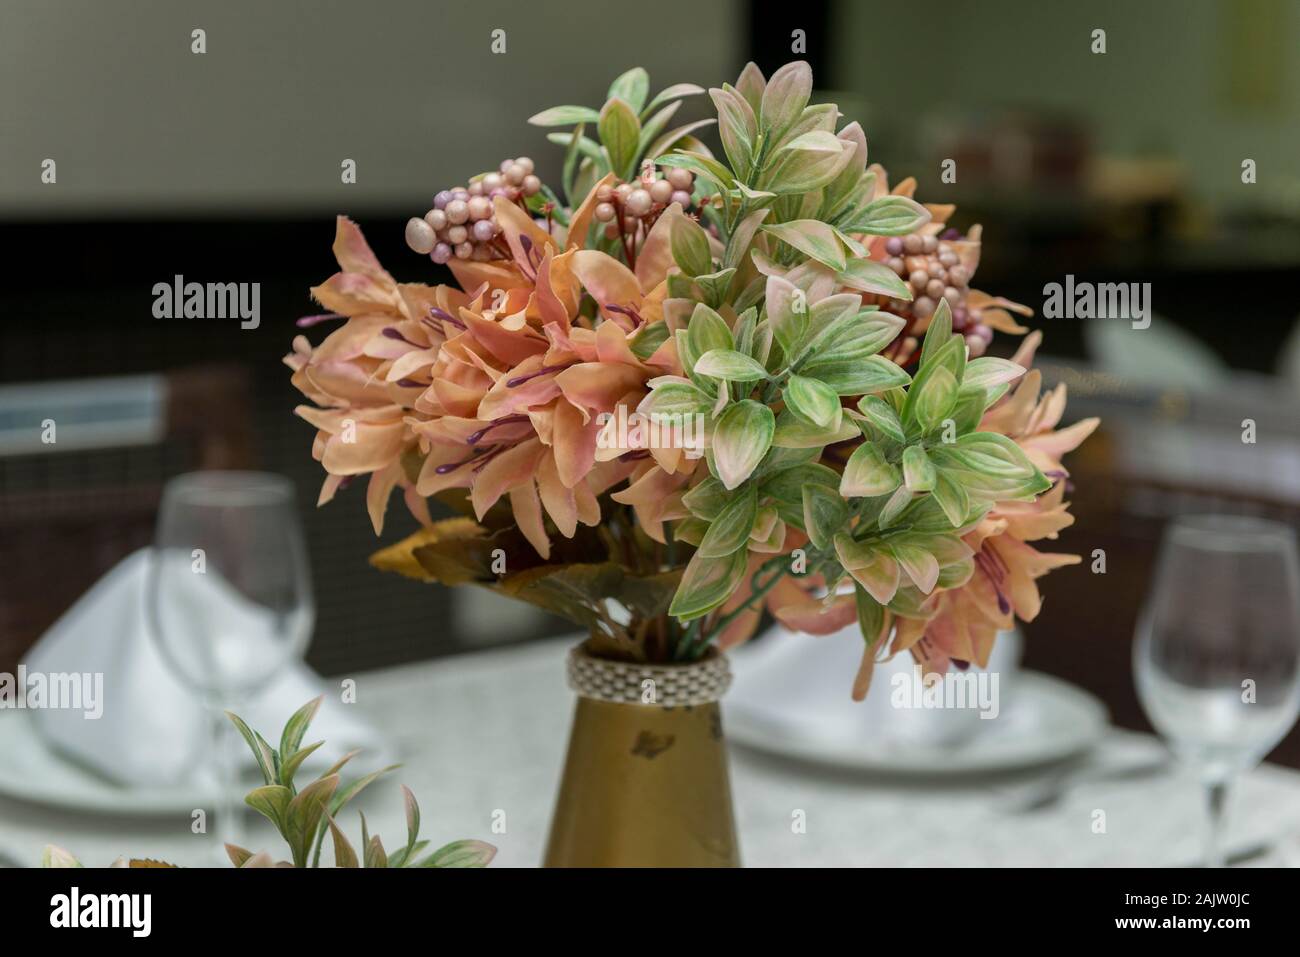 Los cuencos de cristal, servilletas de tela y flores decorativas en hermoso jarrón sobre una mesa de comedor junto a una vela. Decoración sencilla de aniversario de boda. T Foto de stock